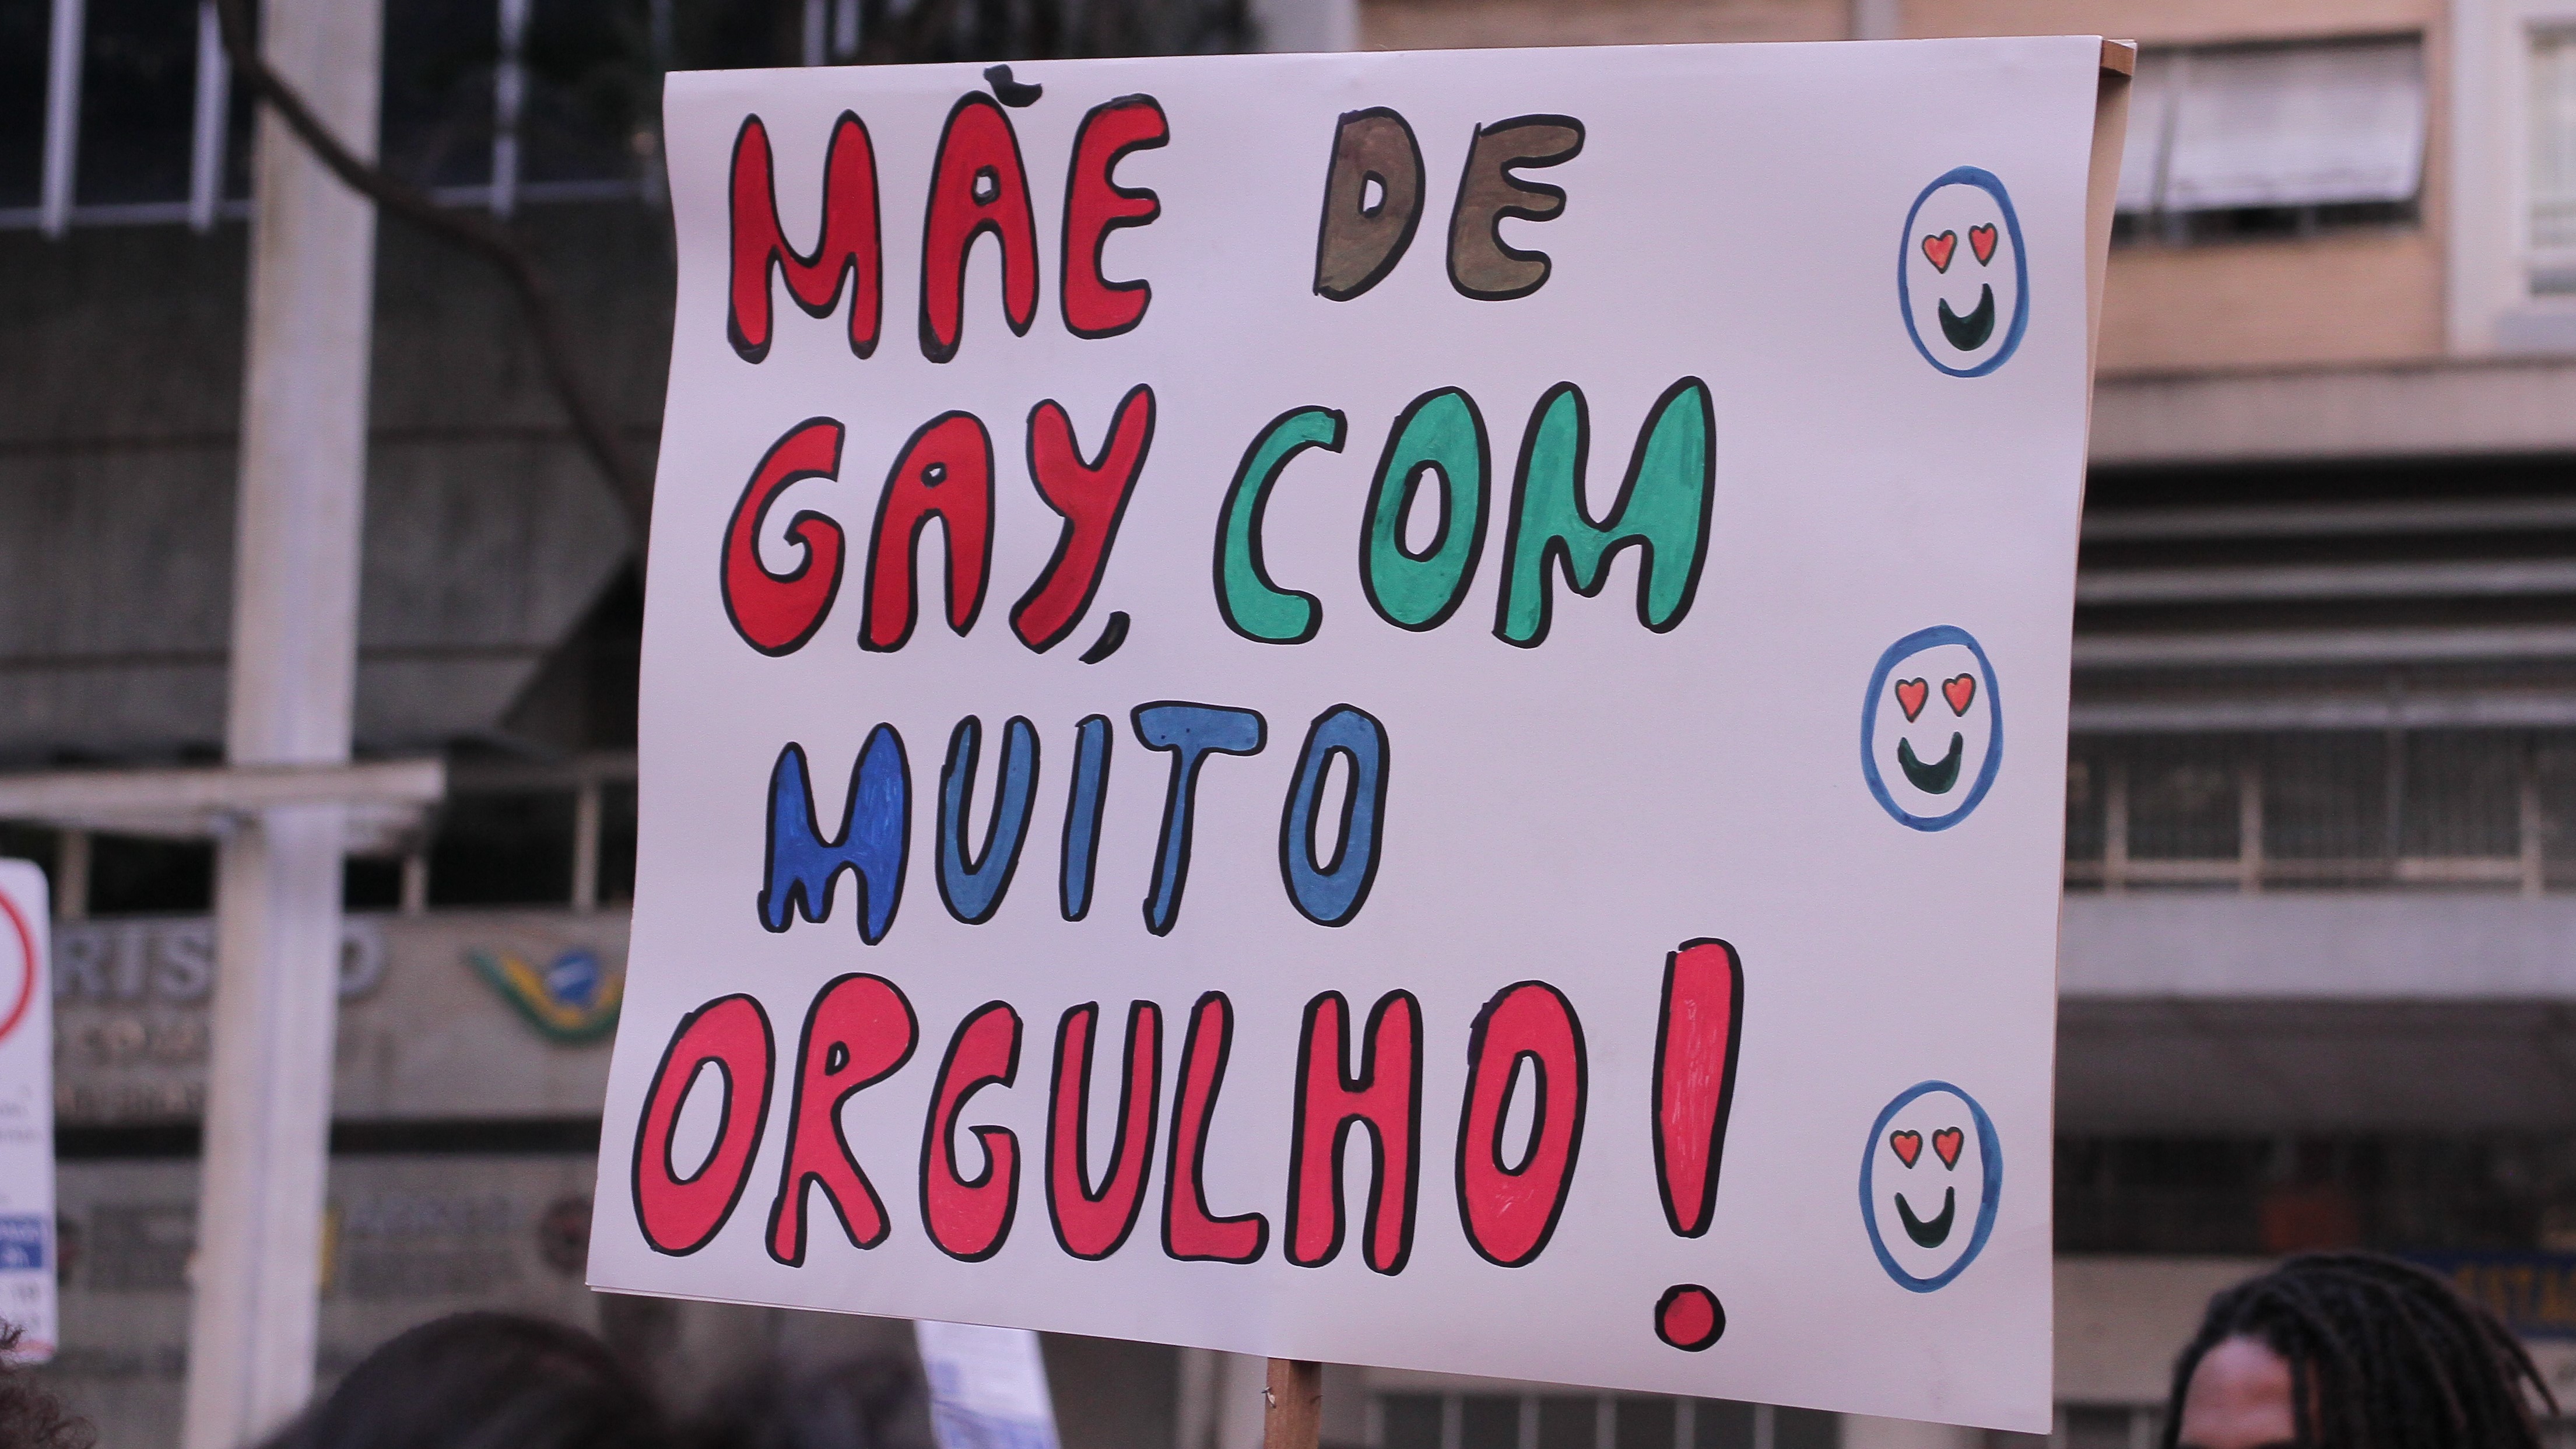 Cartaz usado por ONG na parada LGBTQIA+.